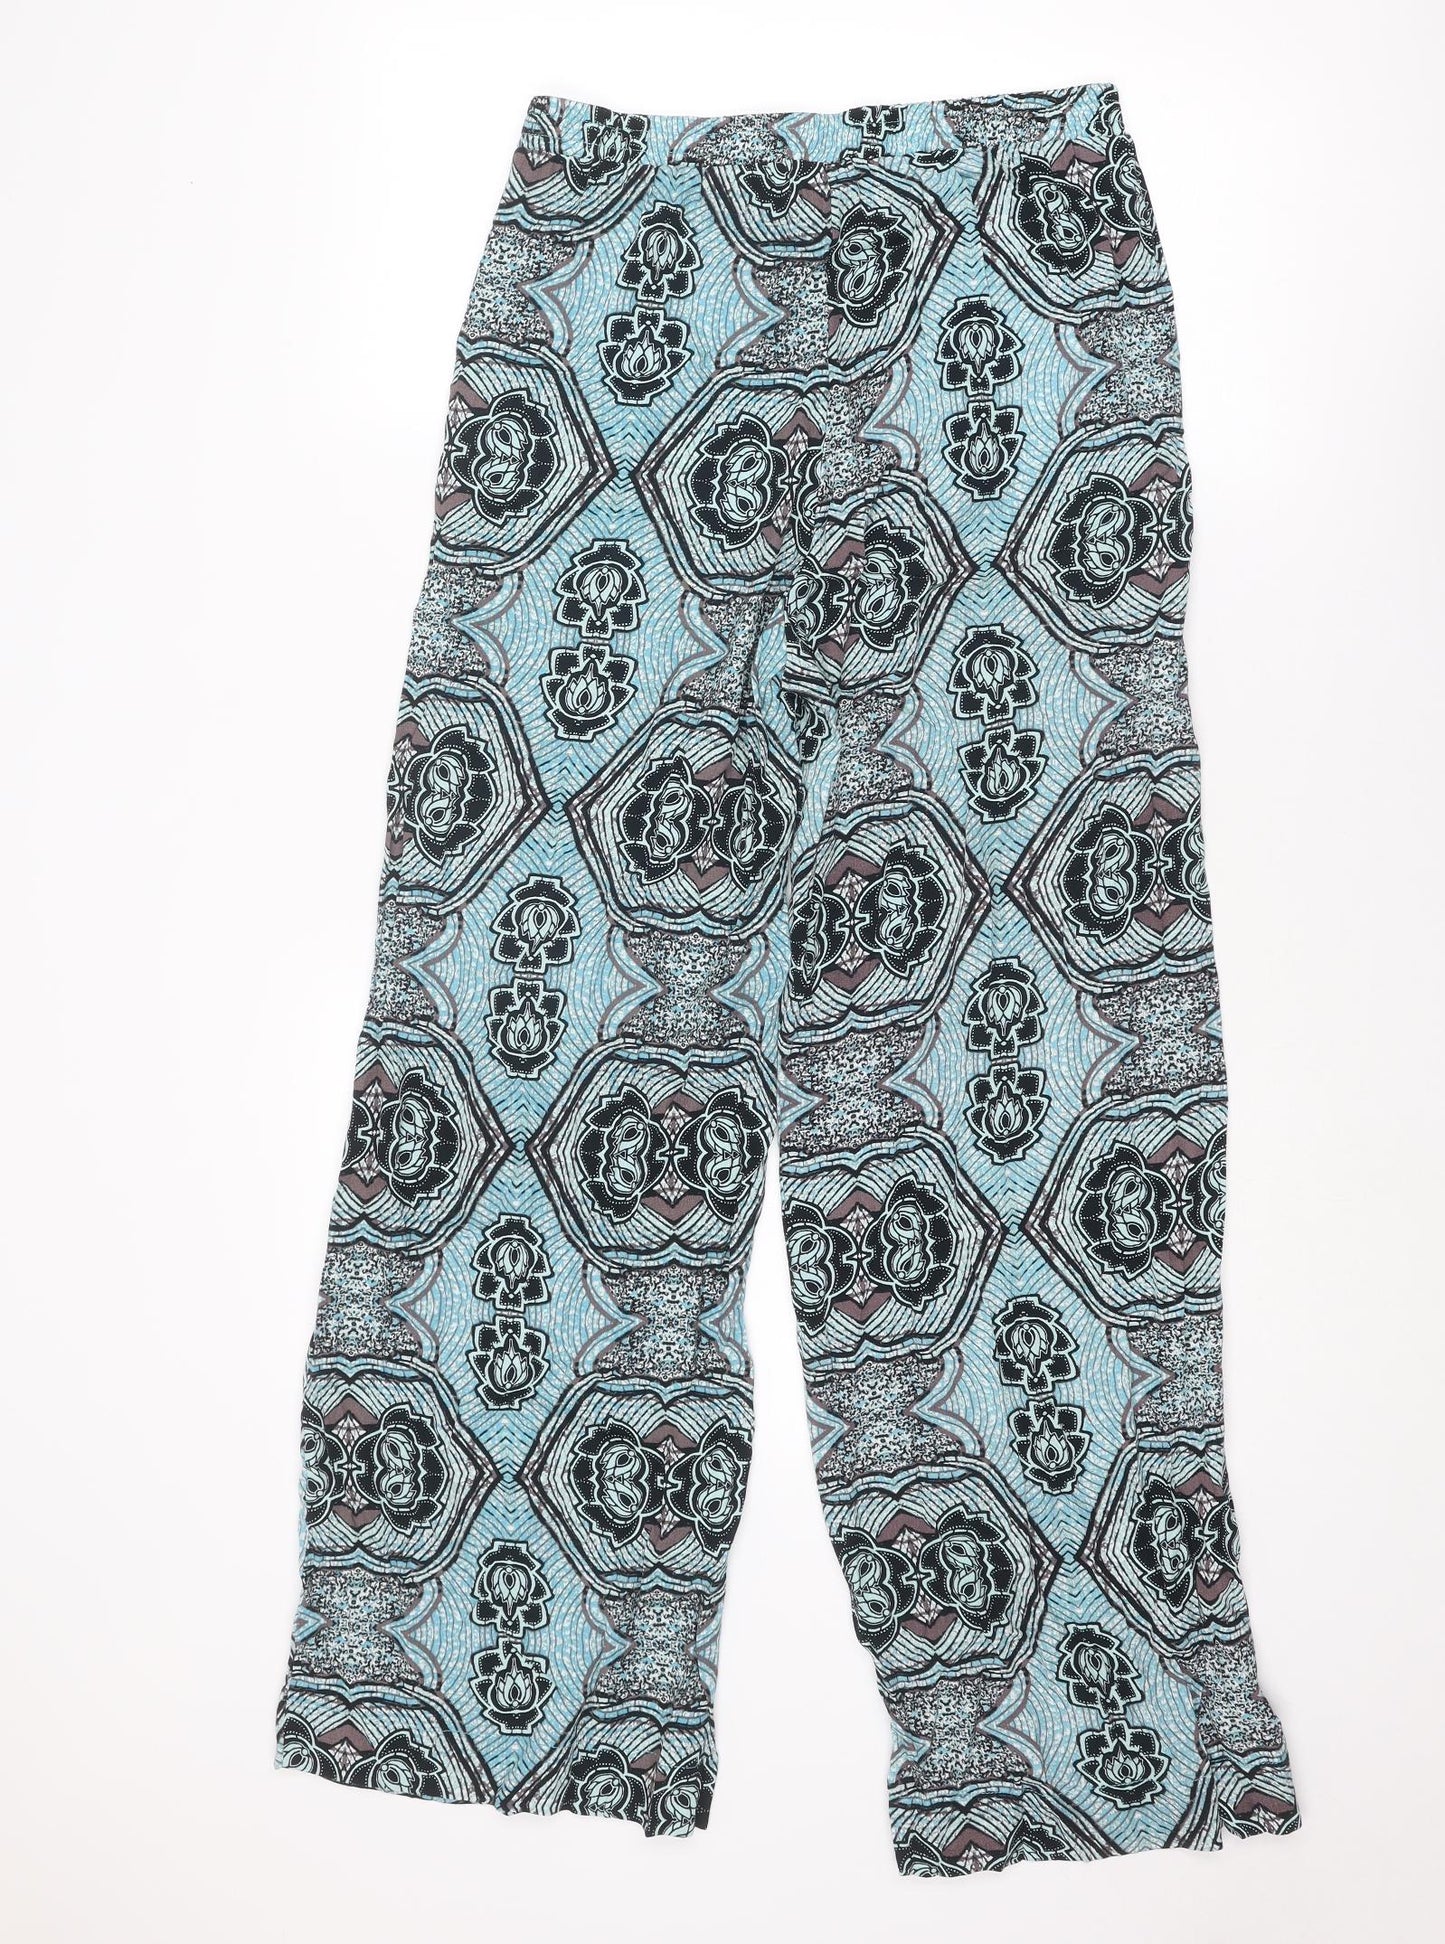 H&M Womens Blue Geometric Viscose Trousers Size 8 L29 in Regular